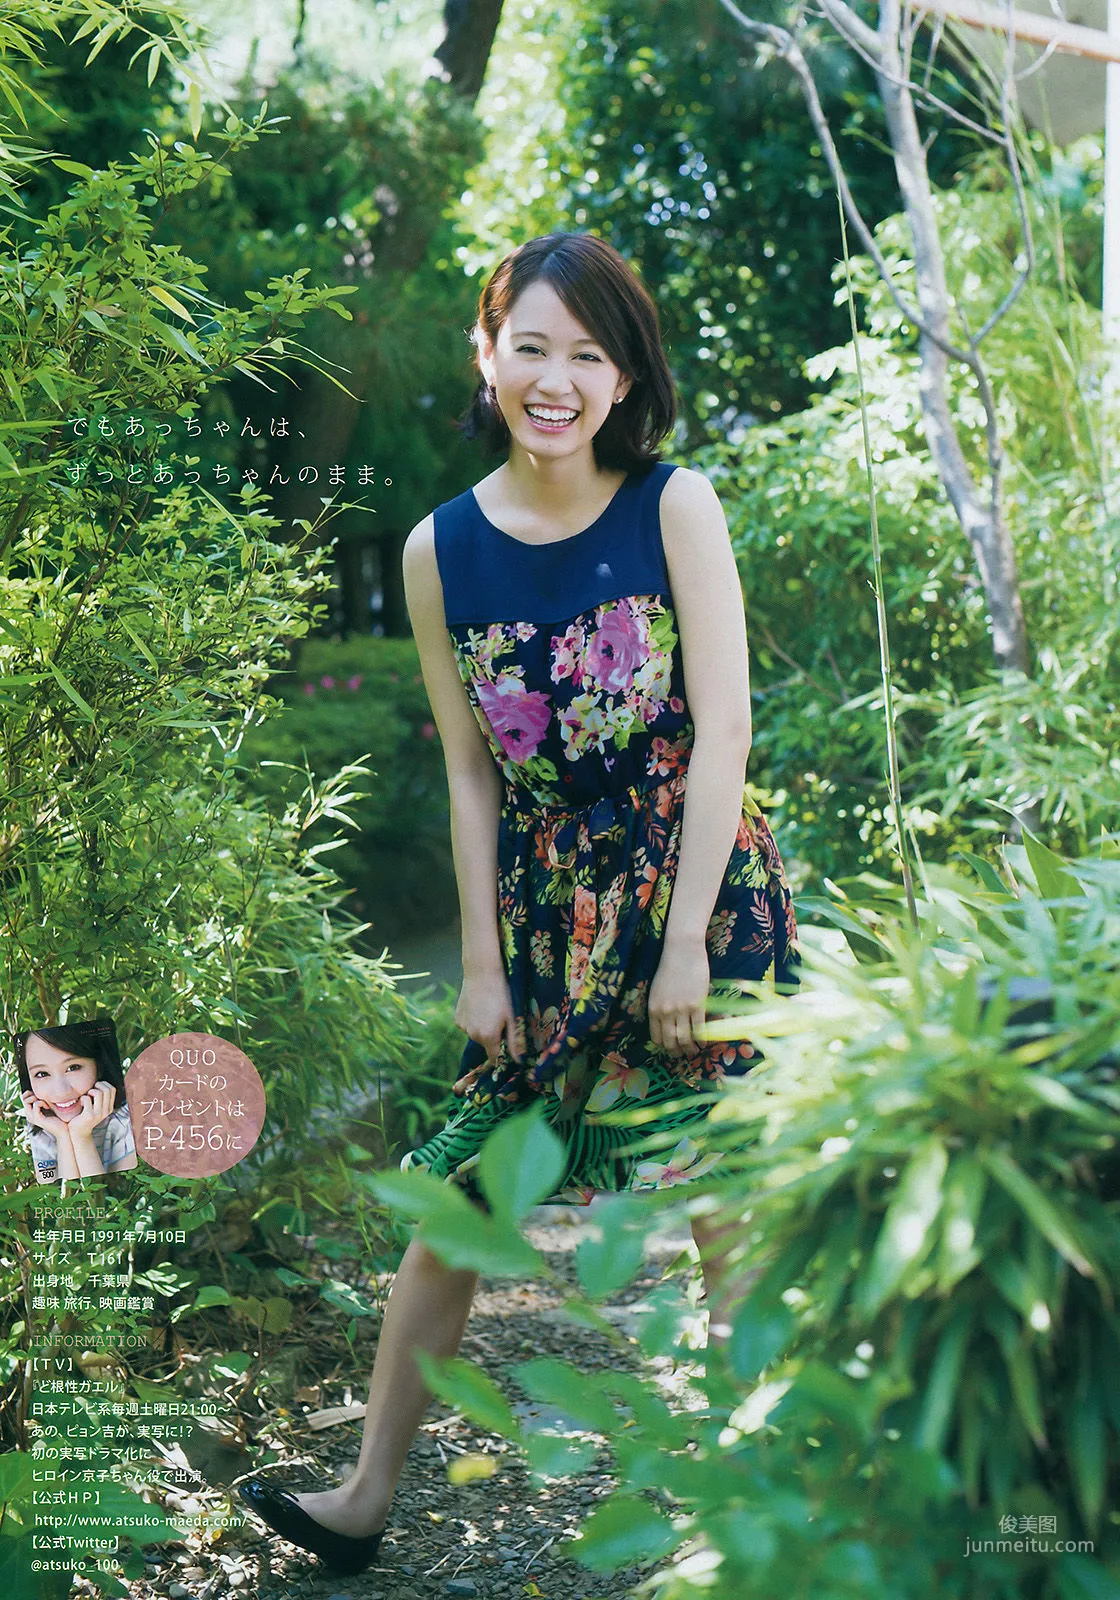 [Young Magazine] 前田敦子 小間千代 2015年No.34 写真杂志8